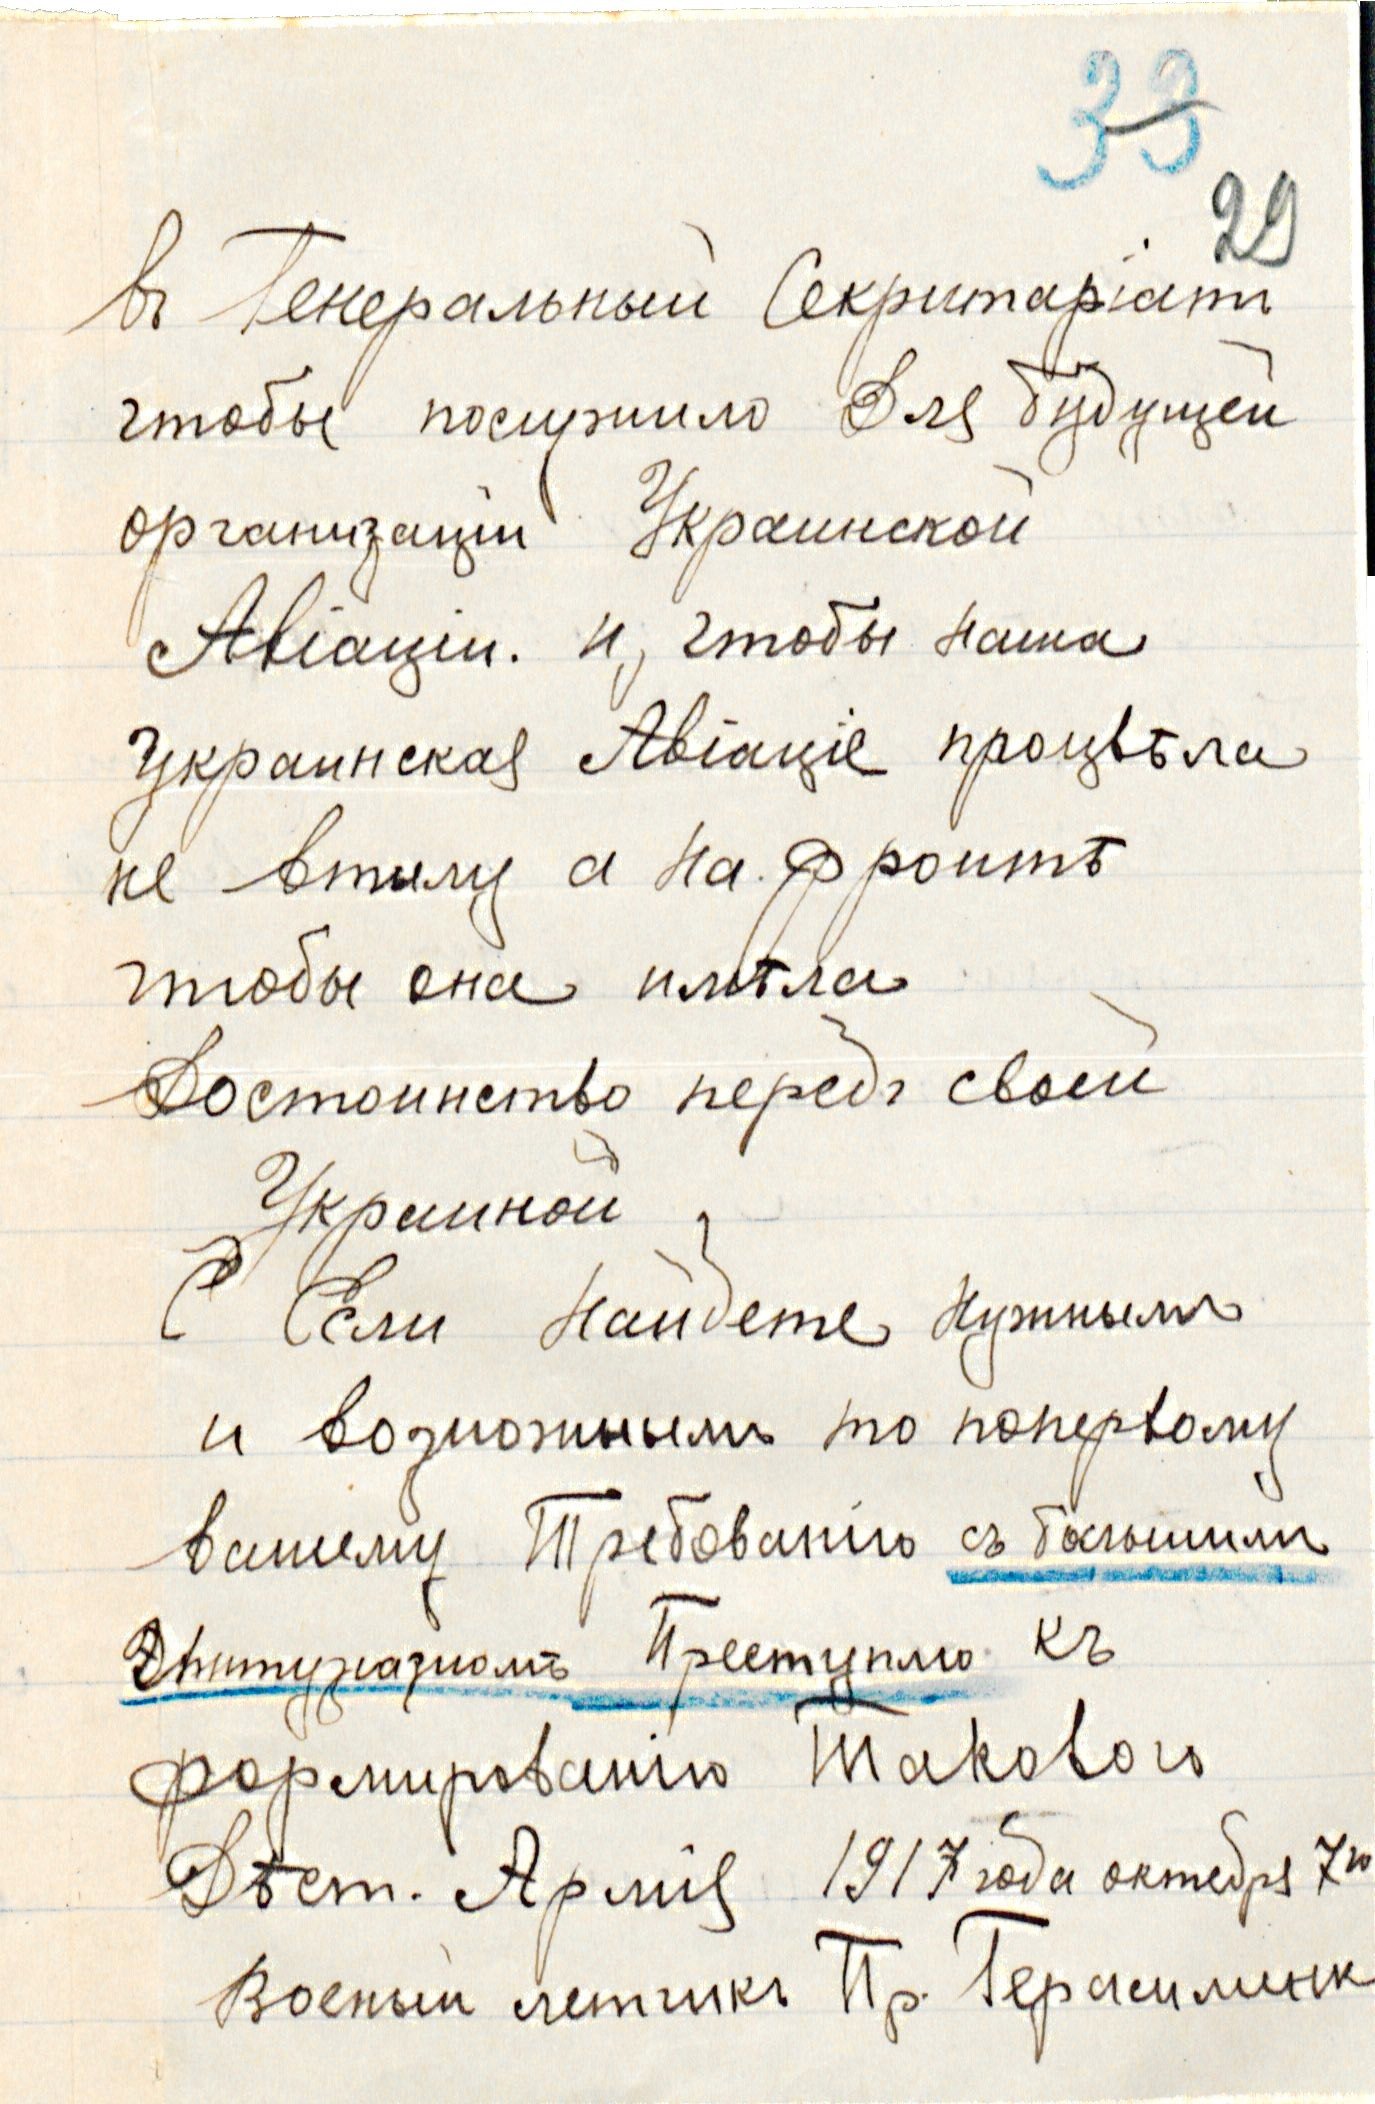 Звернення військового льотчика Герасименка до Генерального Секретаріату з проханням надати можливість воювати за Україну. 07 жовтня 1917 р.